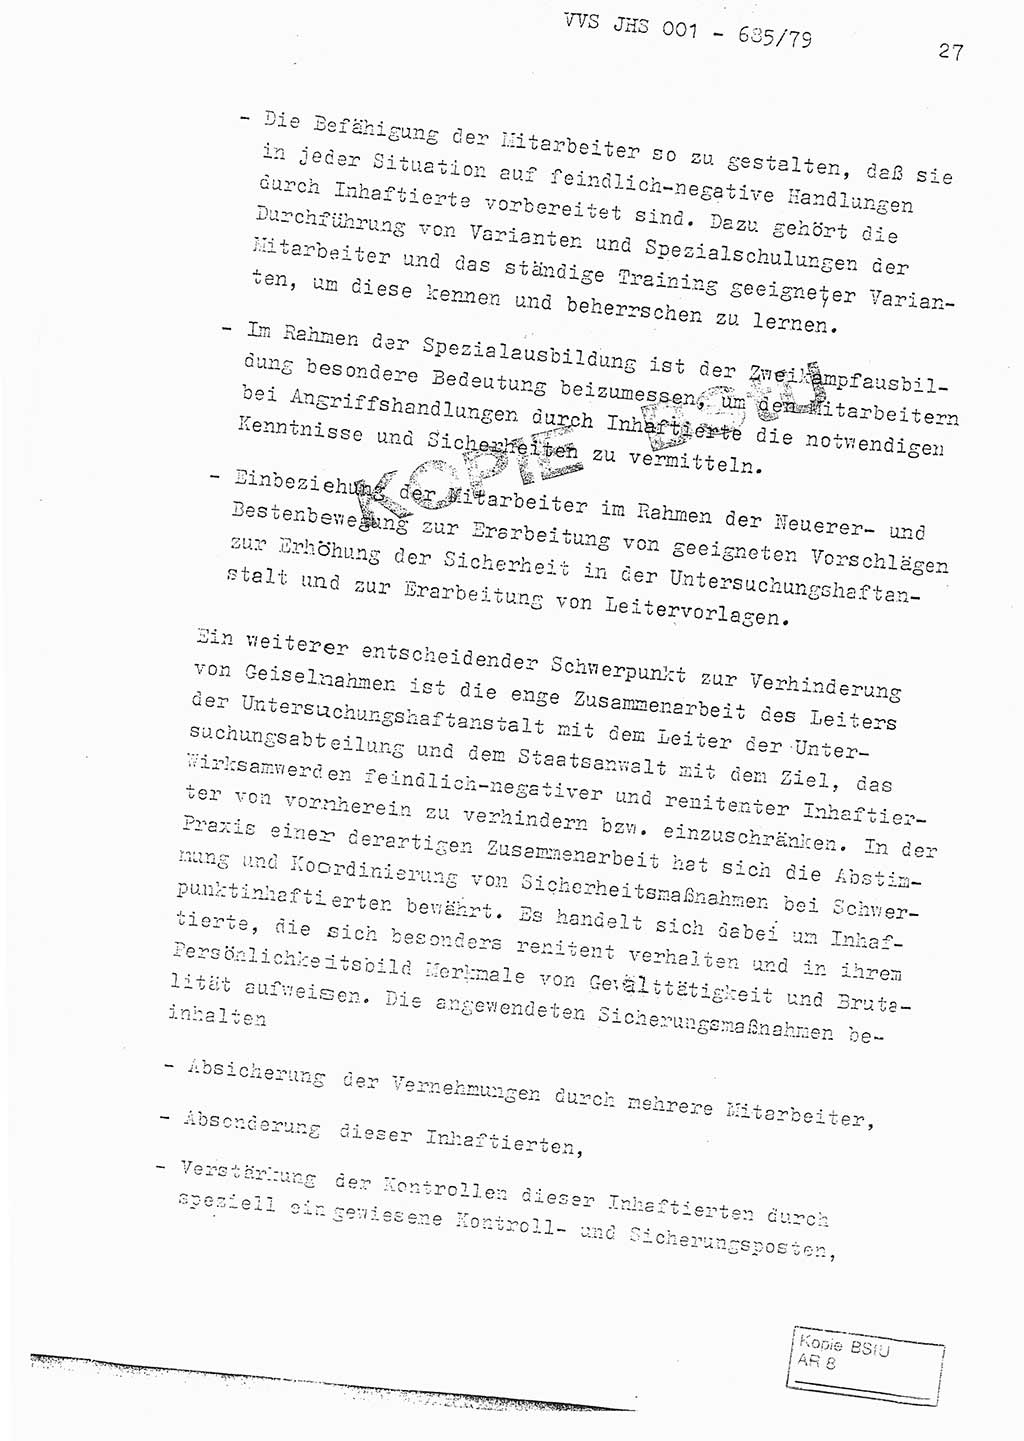 Fachschulabschlußarbeit Oberleutnant Helmut Peckruhn (BV Bln. Abt. ⅩⅣ), Ministerium für Staatssicherheit (MfS) [Deutsche Demokratische Republik (DDR)], Juristische Hochschule (JHS), Vertrauliche Verschlußsache (VVS) 001-685/79, Potsdam 1979, Seite 27 (FS-Abschl.-Arb. MfS DDR JHS VVS 001-685/79 1979, S. 27)